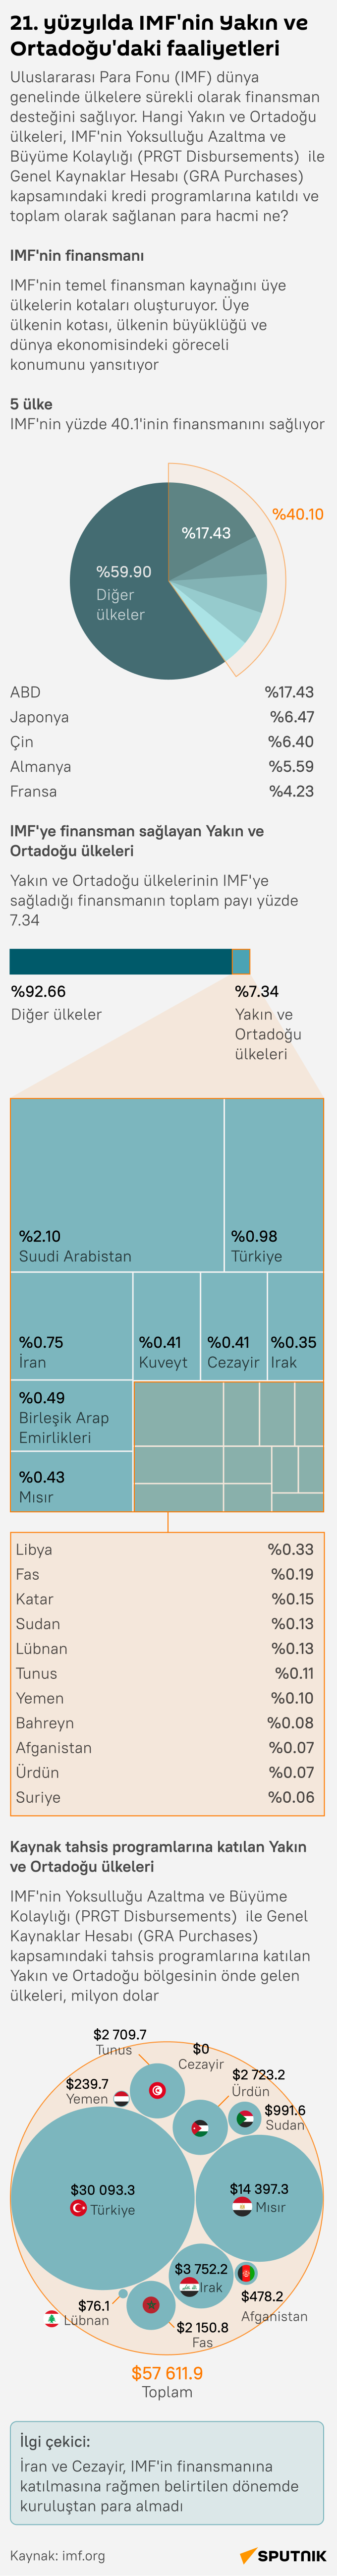 İnfografik 21.Yüzyılda IMF'nin Yakın ve Ortadoğu'daki faaliyetleri  - Sputnik Türkiye